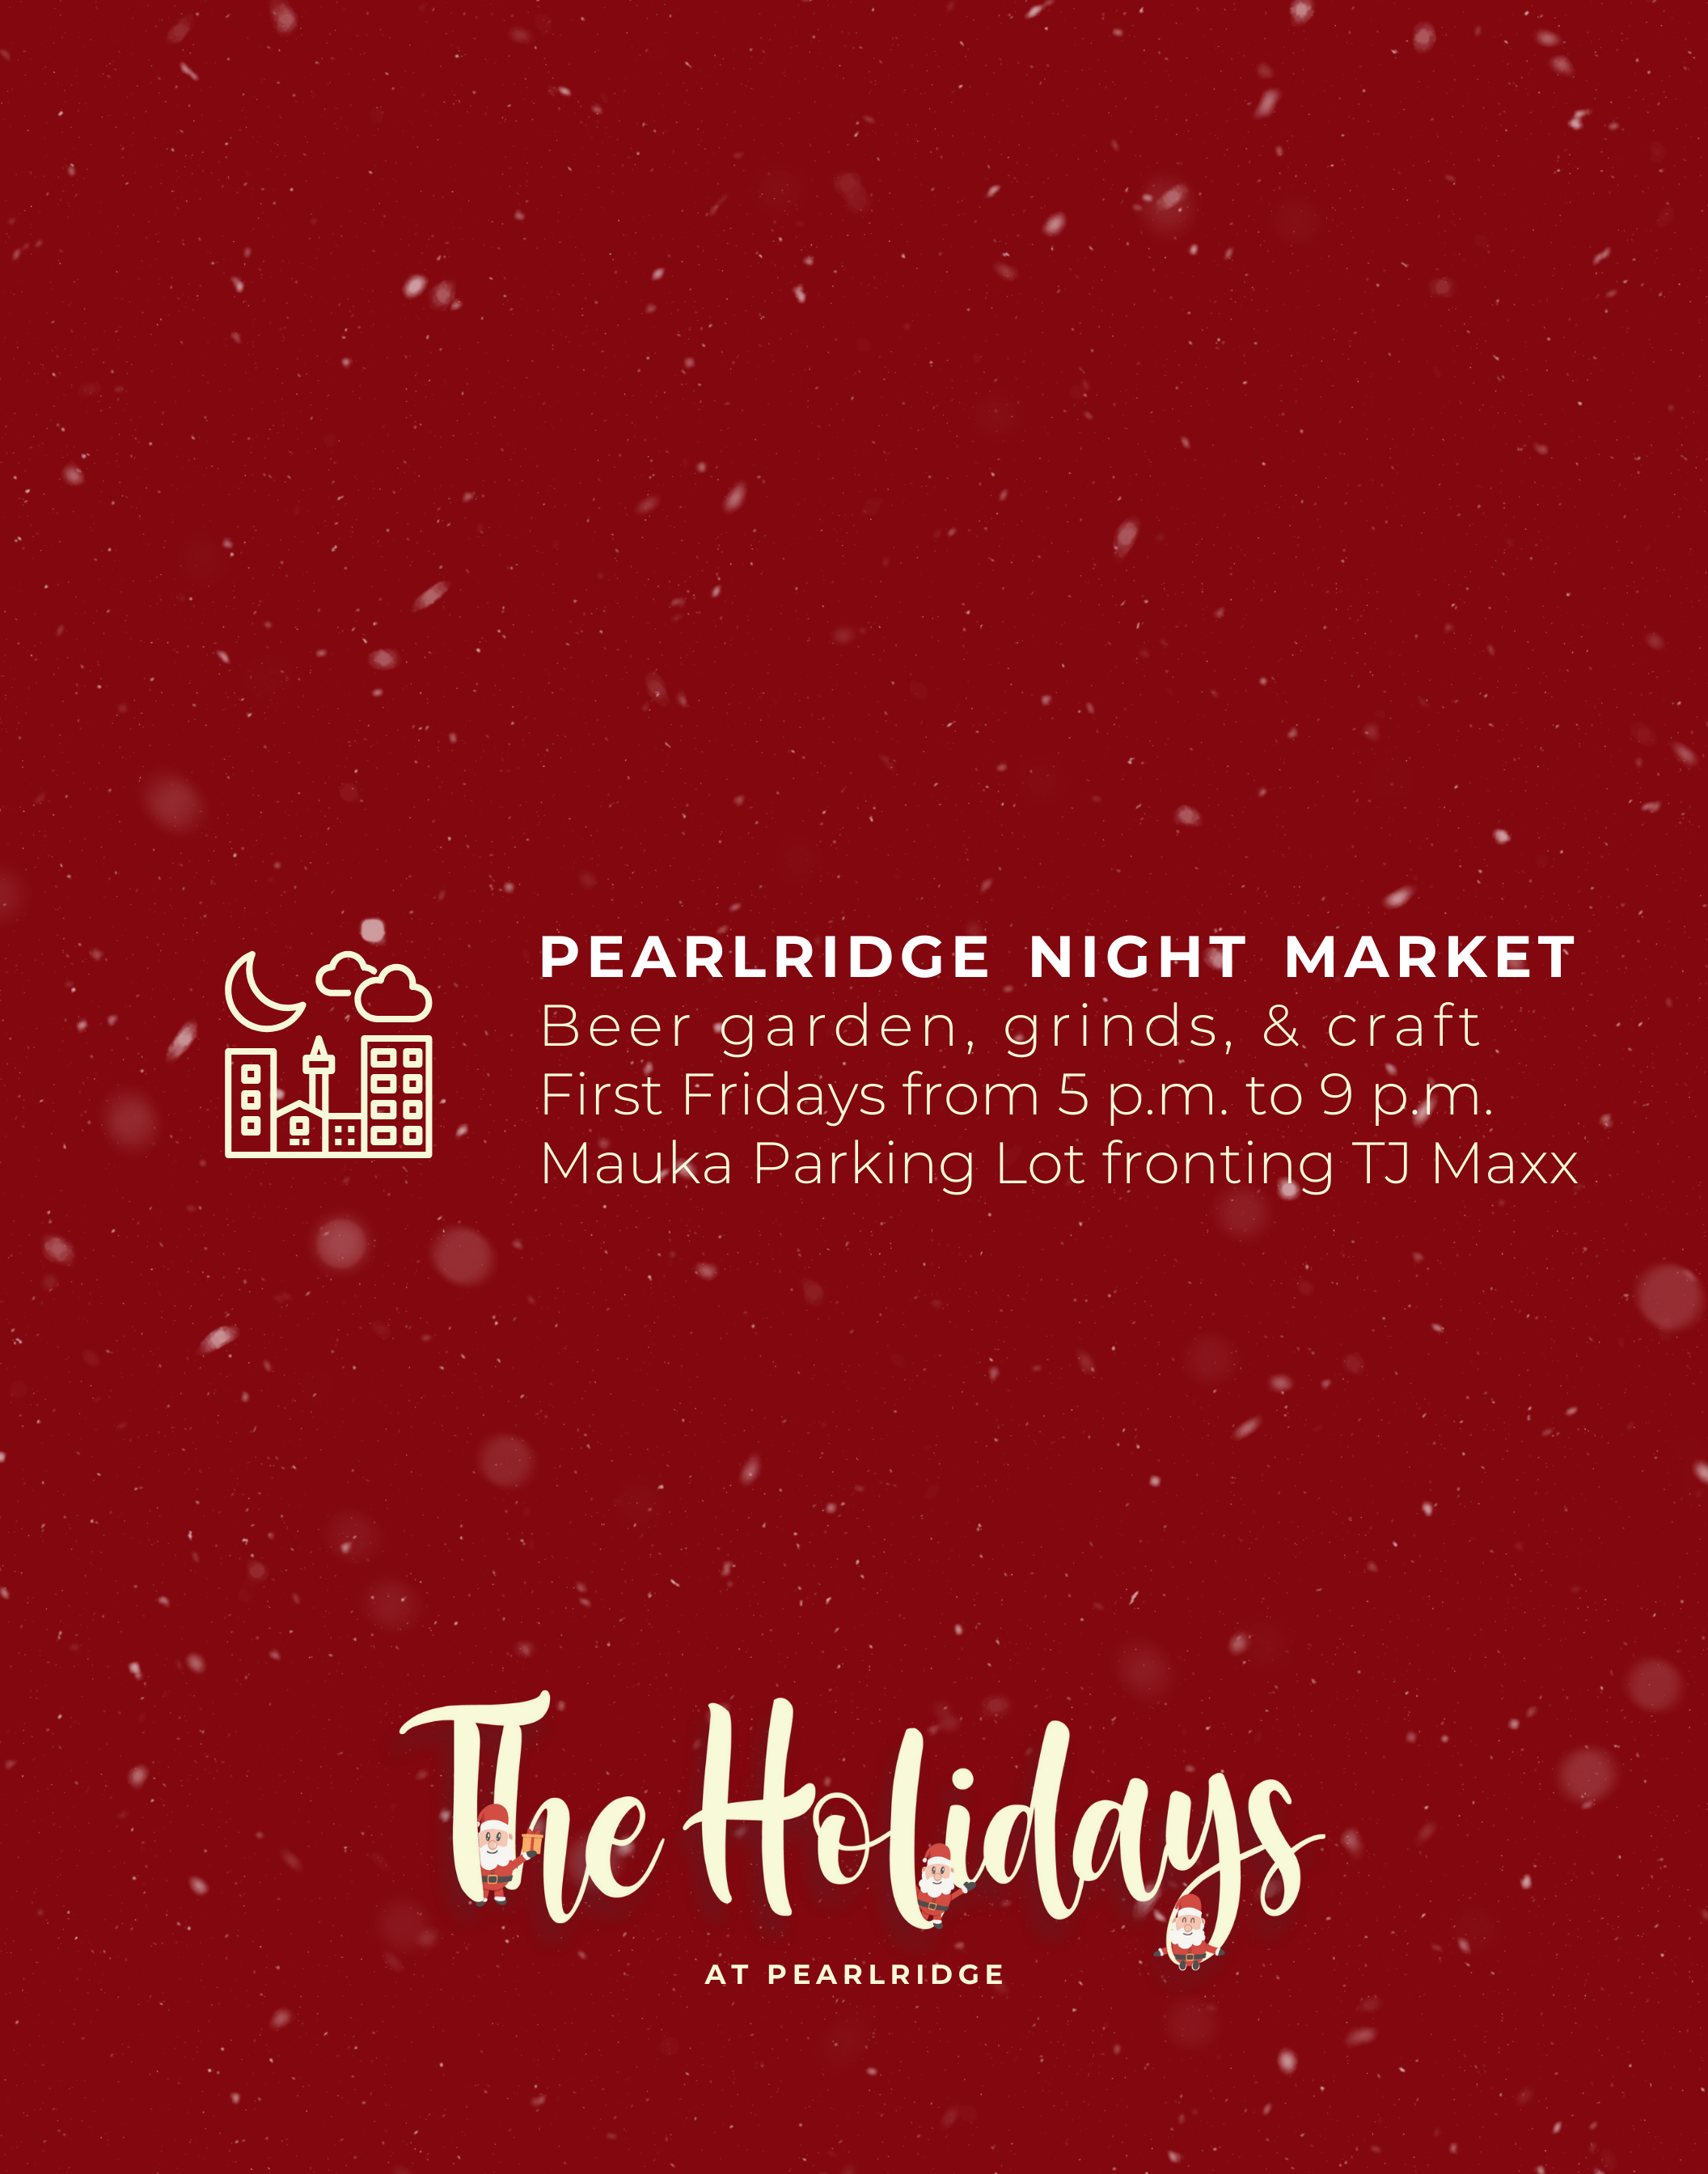 The Pearlridge Night Market Pearlridge